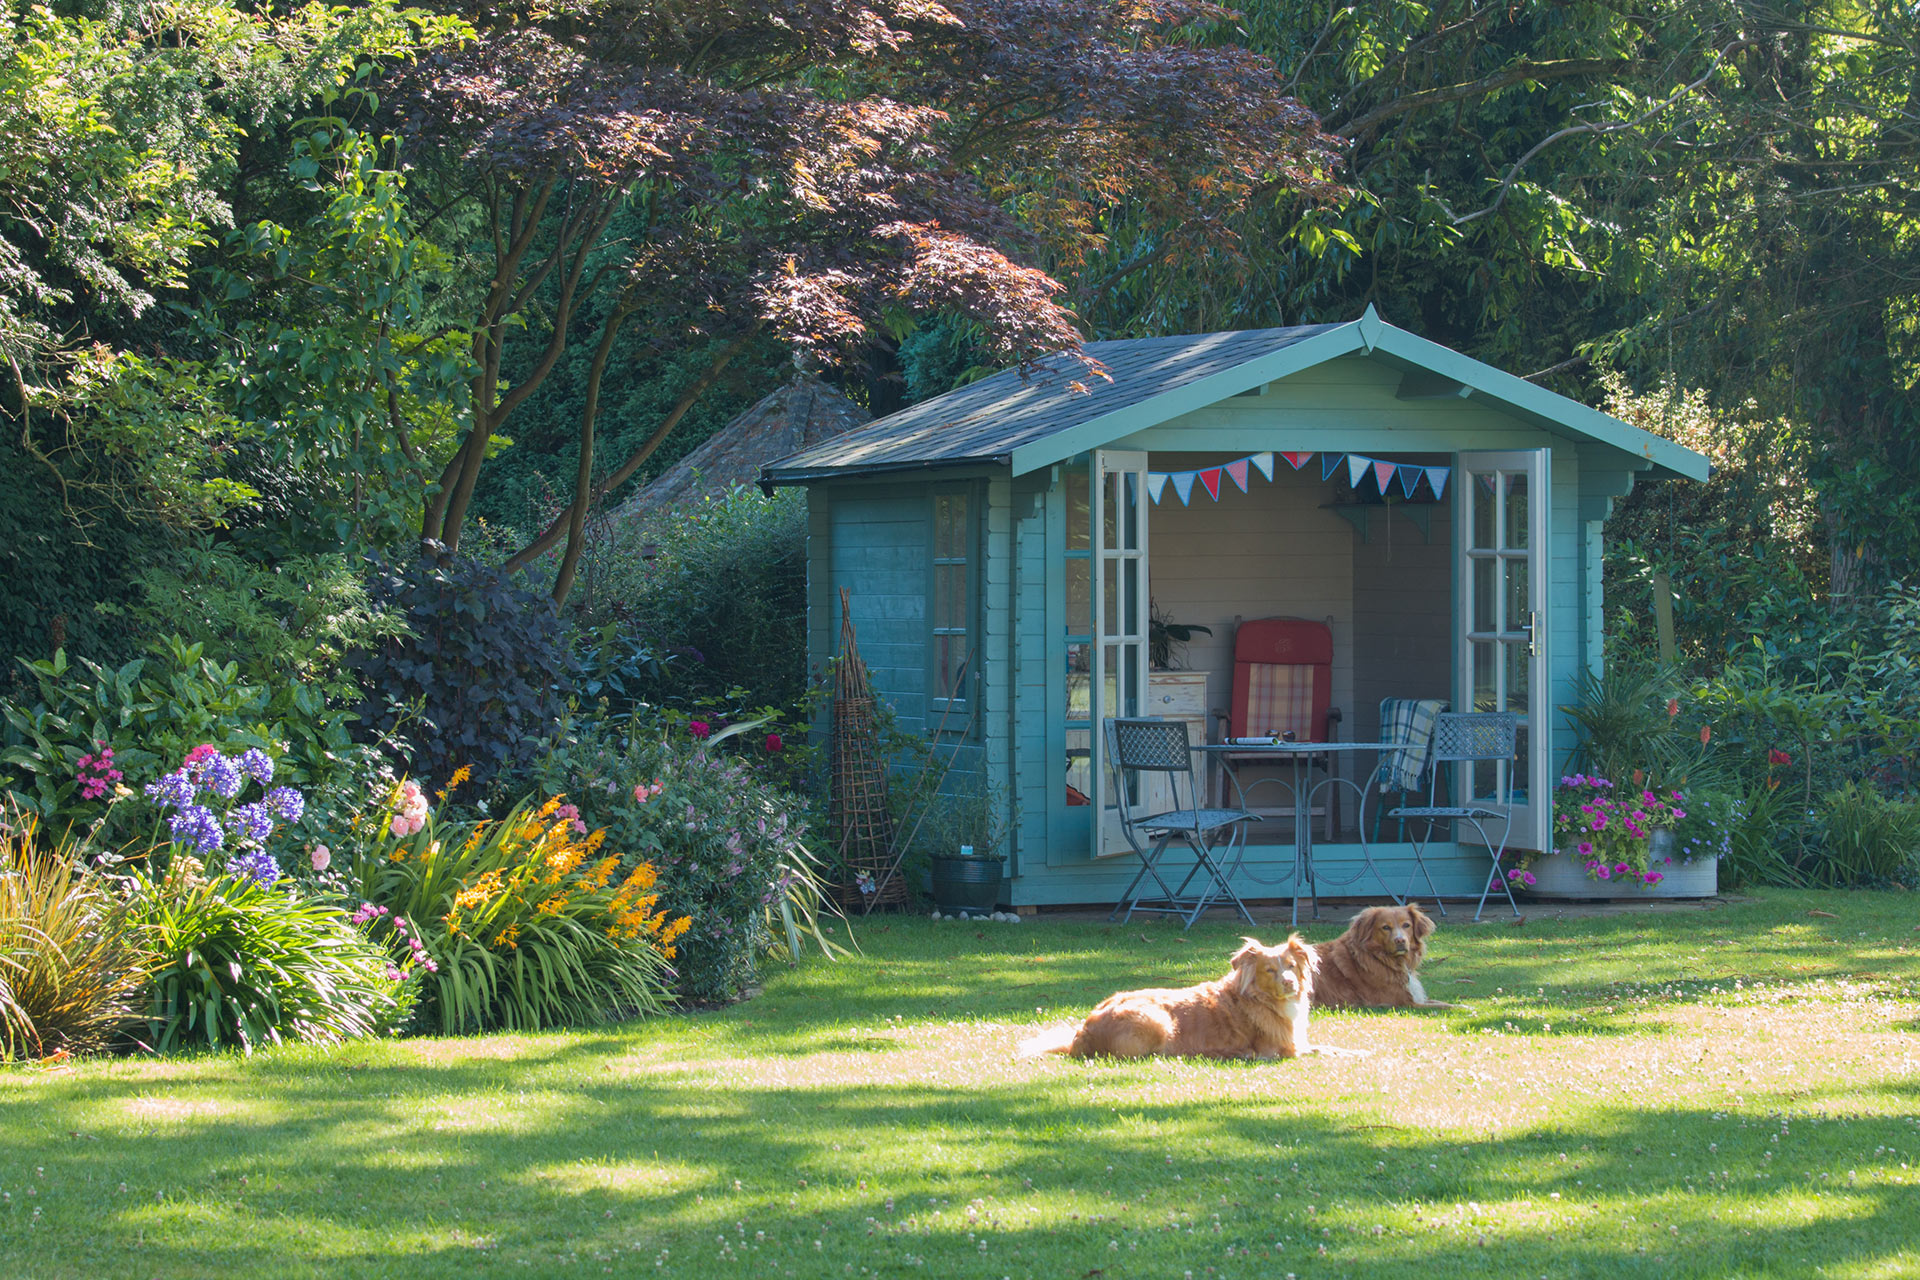 Gemütliches Gartenhaus mit Sitzecke, Hunde liegen auf der Wiese davor, im Garten